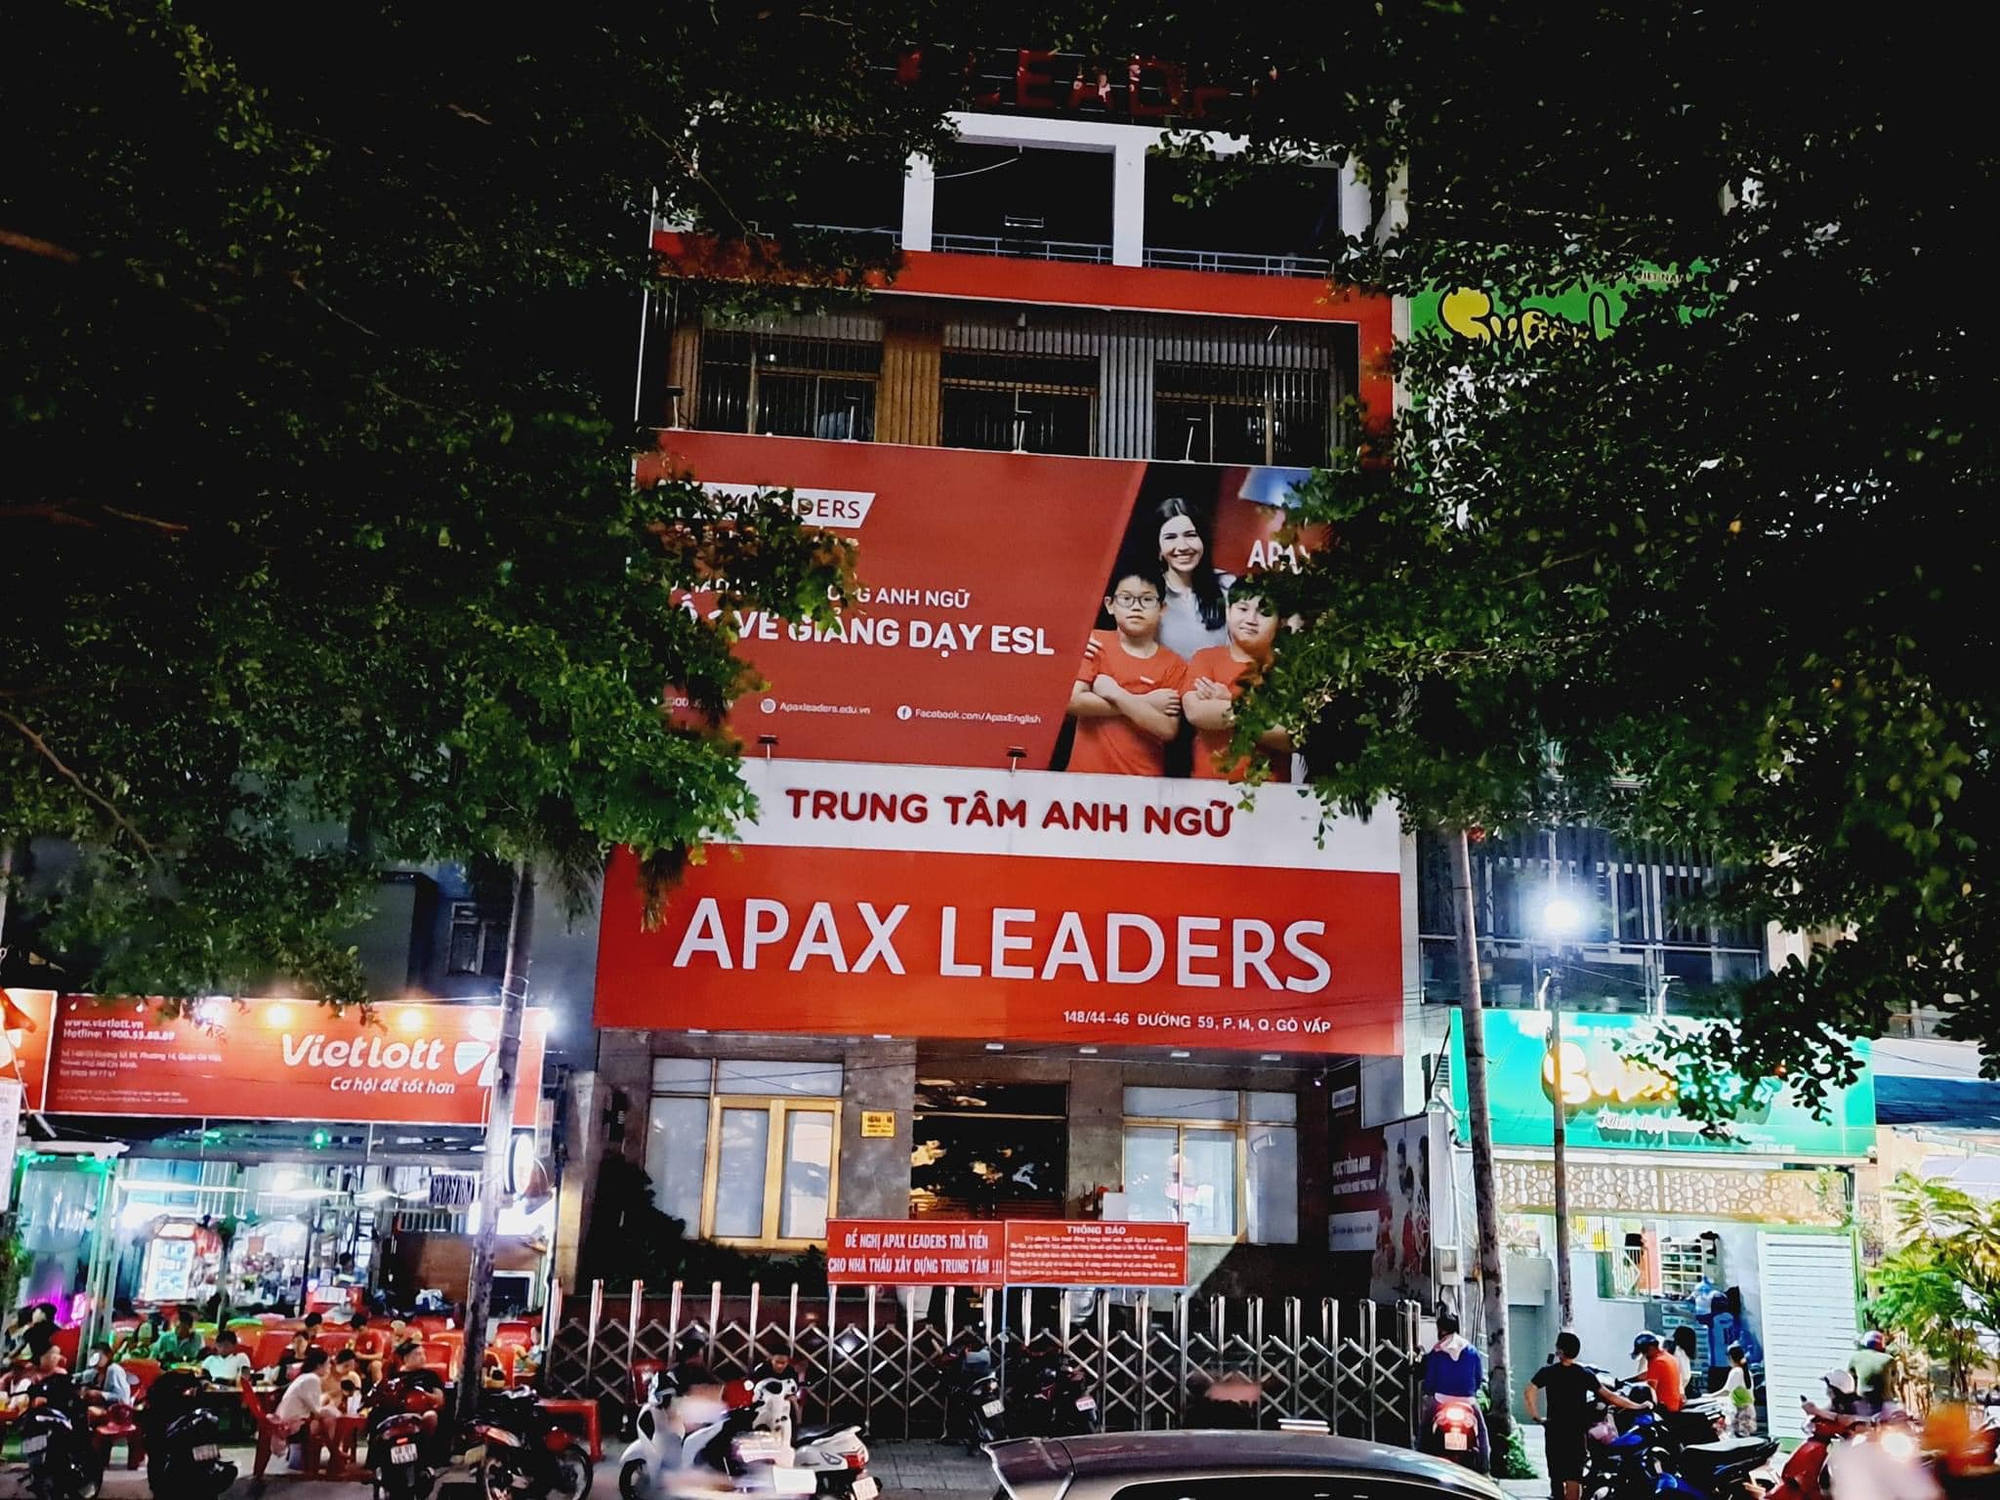 Sau khi công an tiếp nhận đơn tố cáo, Apax Leaders hứa sẽ tiếp phụ huynh tại TP.HCM - Ảnh 3.